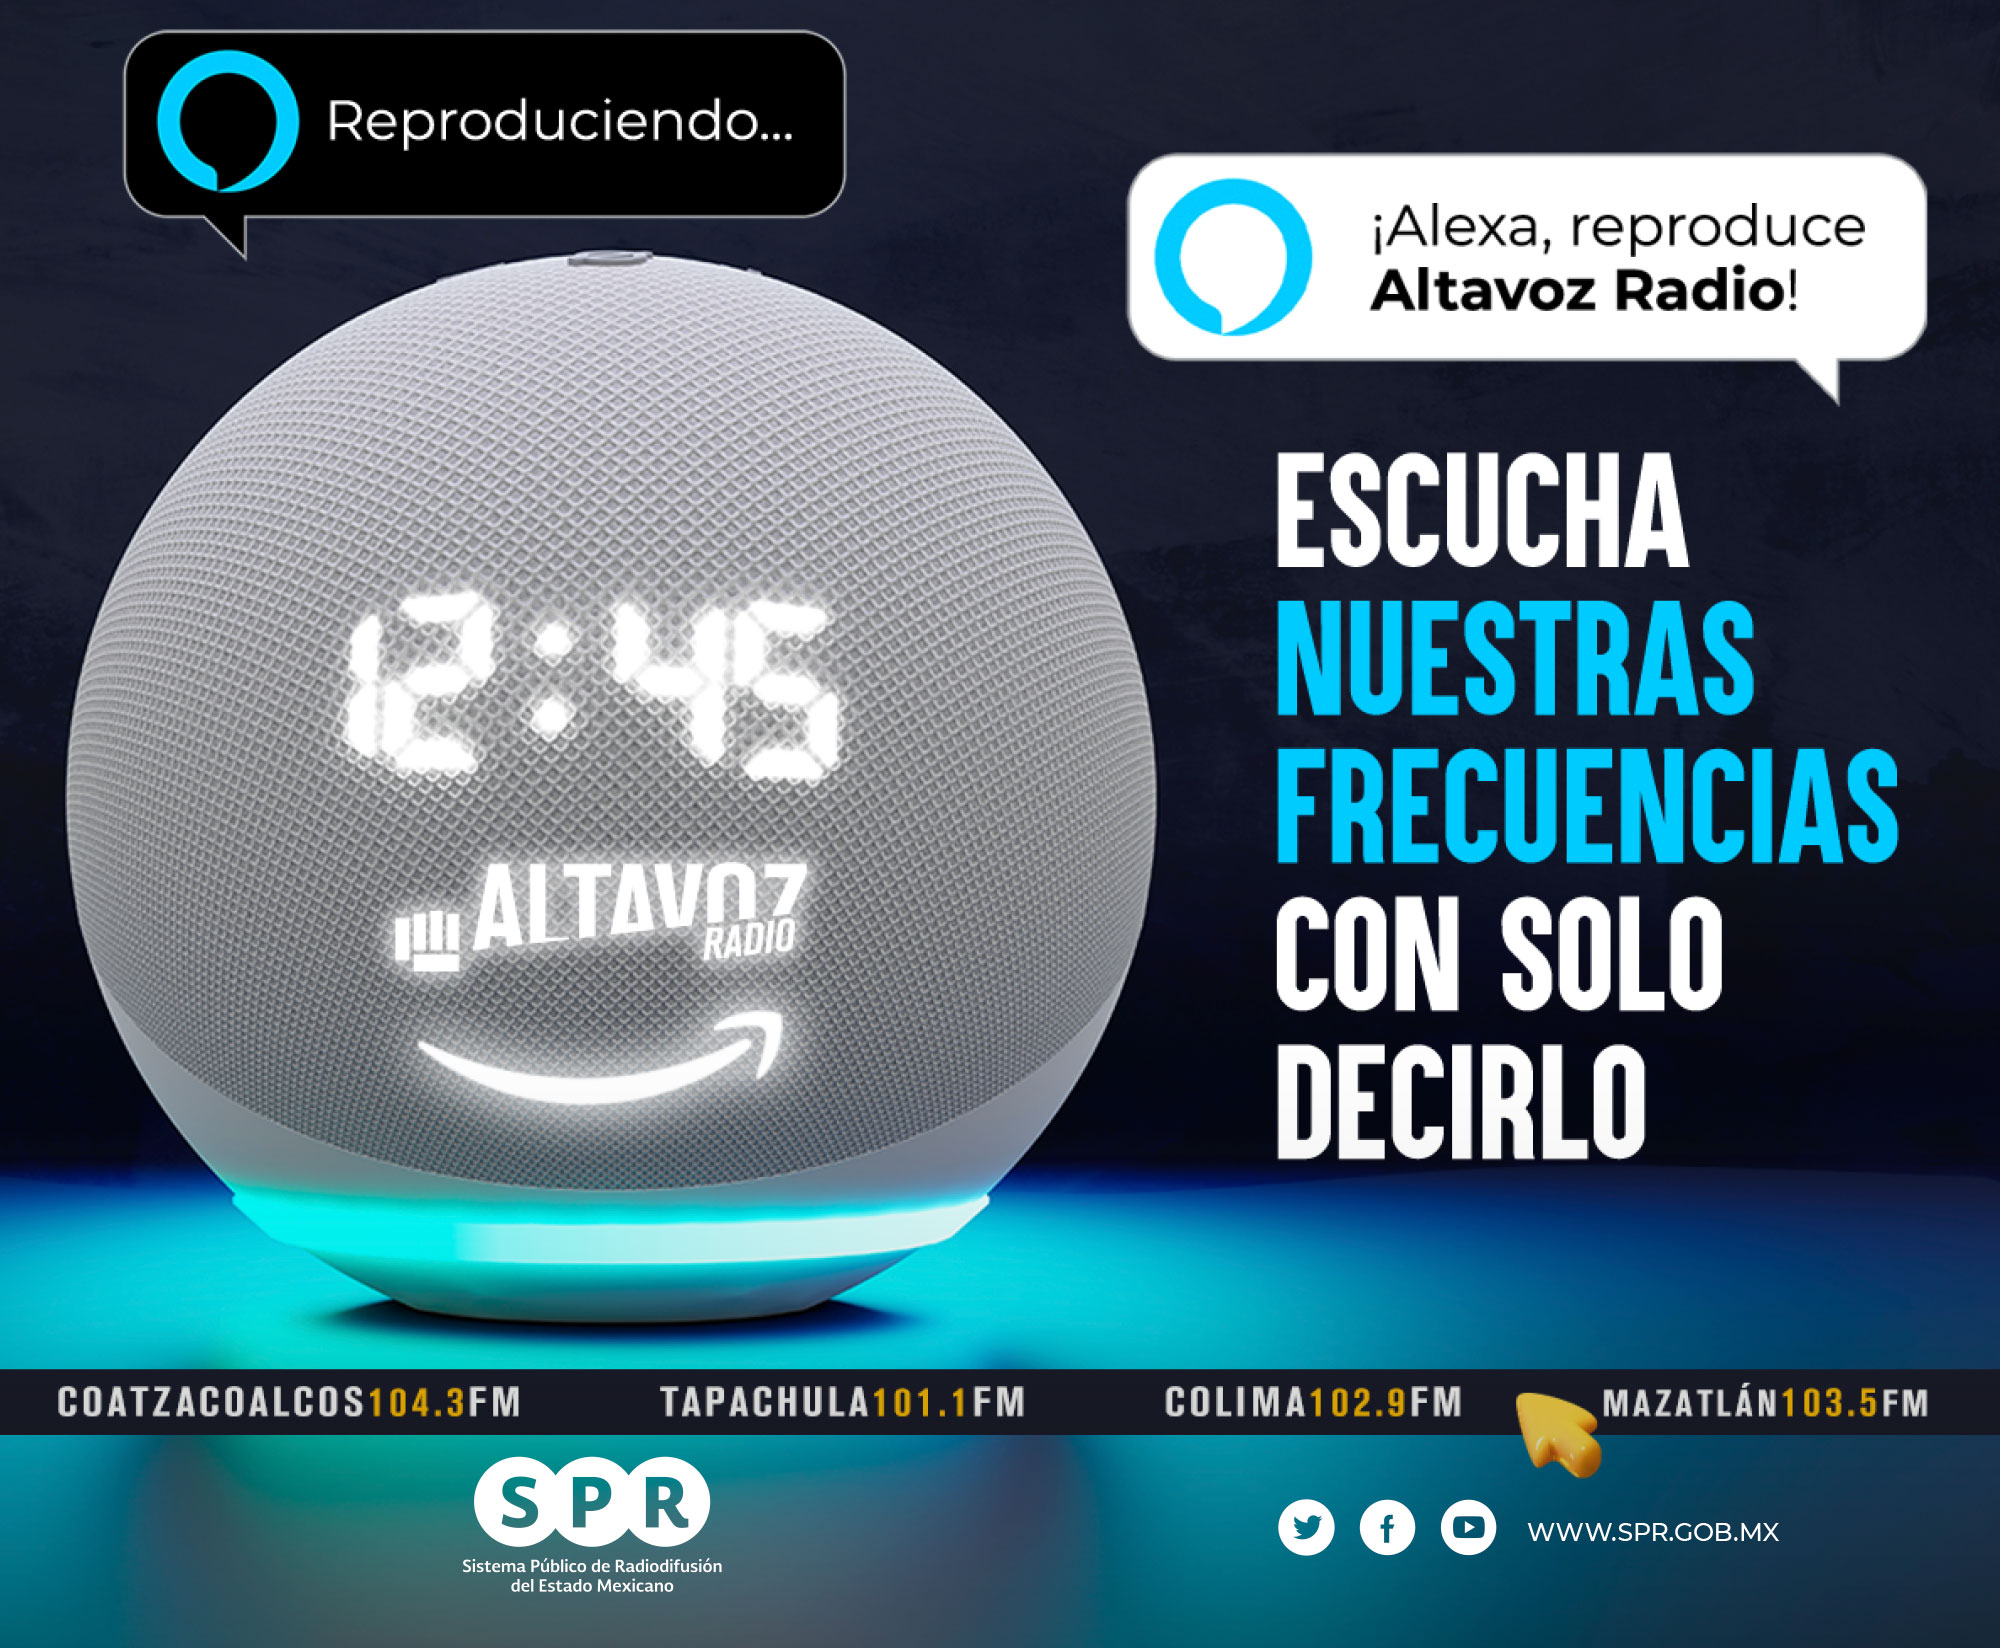 La red Altavoz Radio crece: recibe el SPR dos nuevas concesiones de Radiodifusión Sonora”